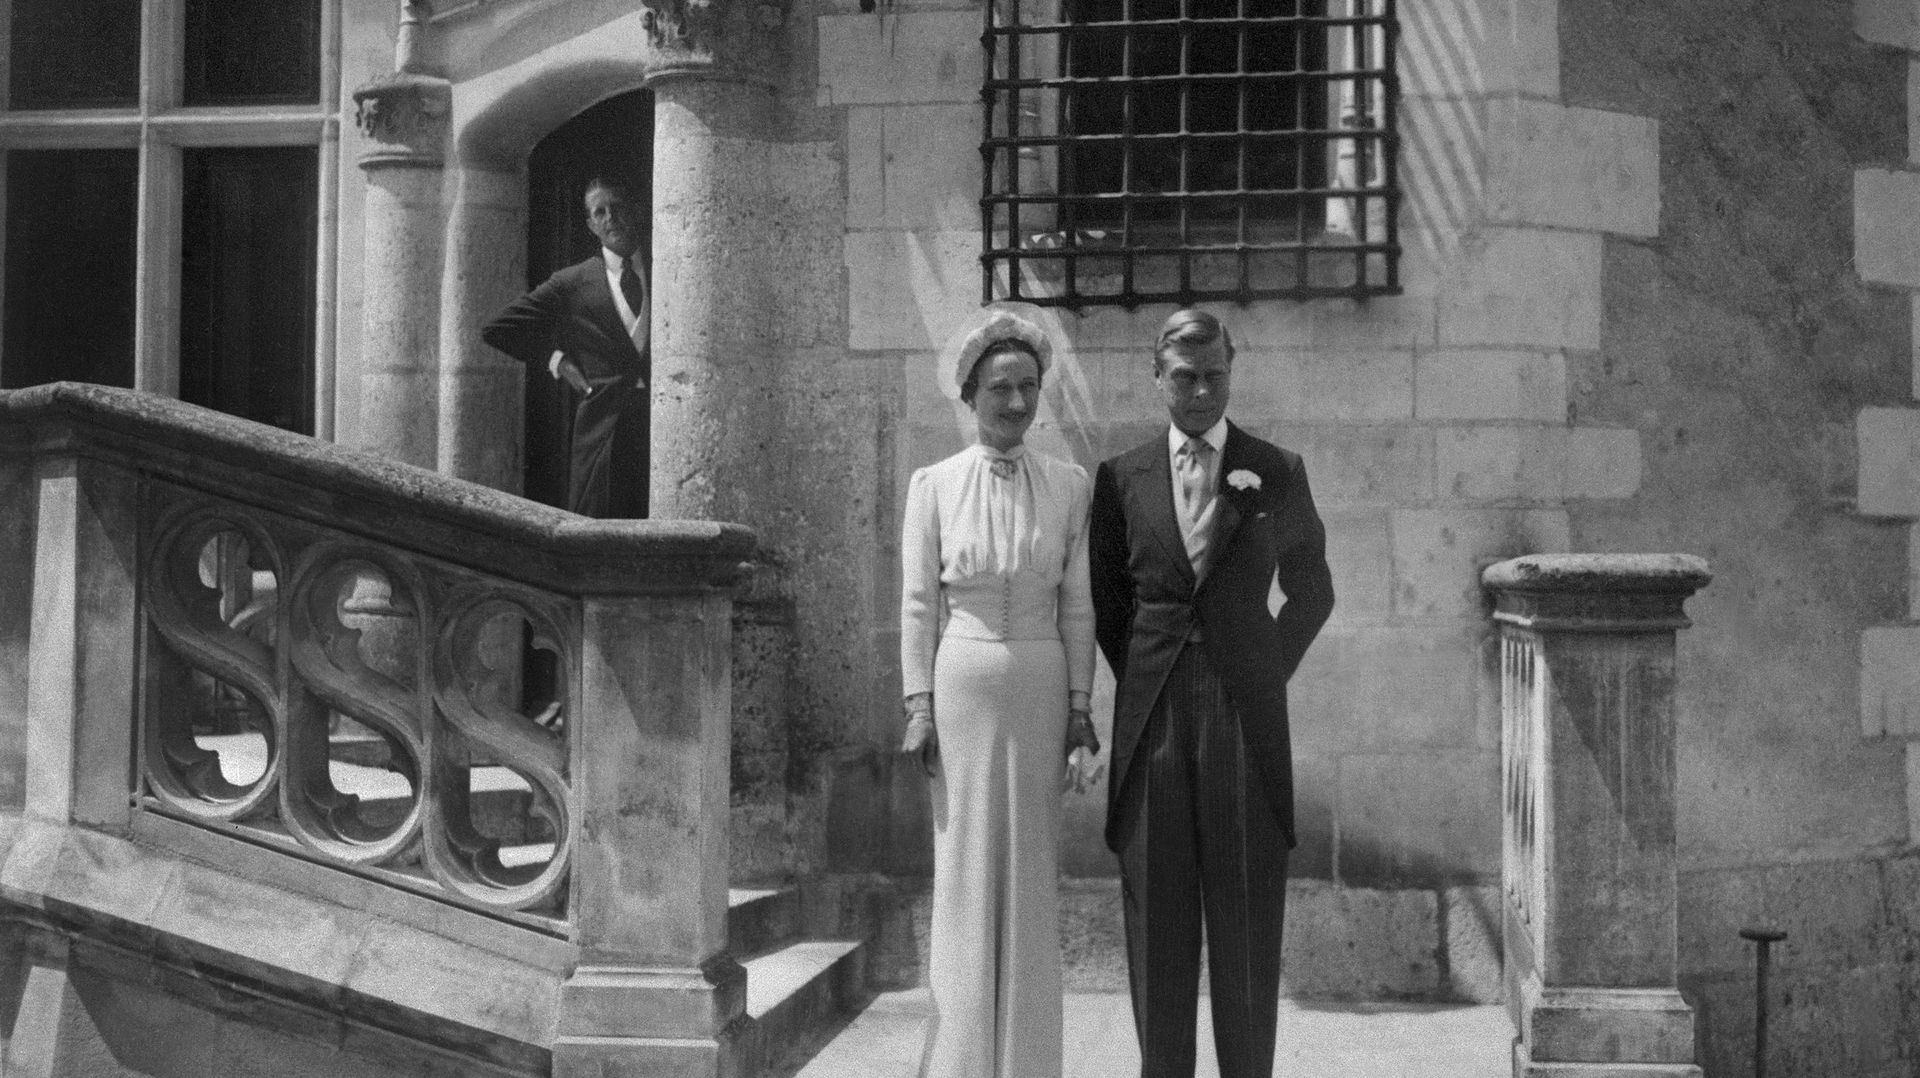 Le duc de Windsor (Edouard VIII après son abdication) épouse Wallis Simpson  le 3 juin 1937